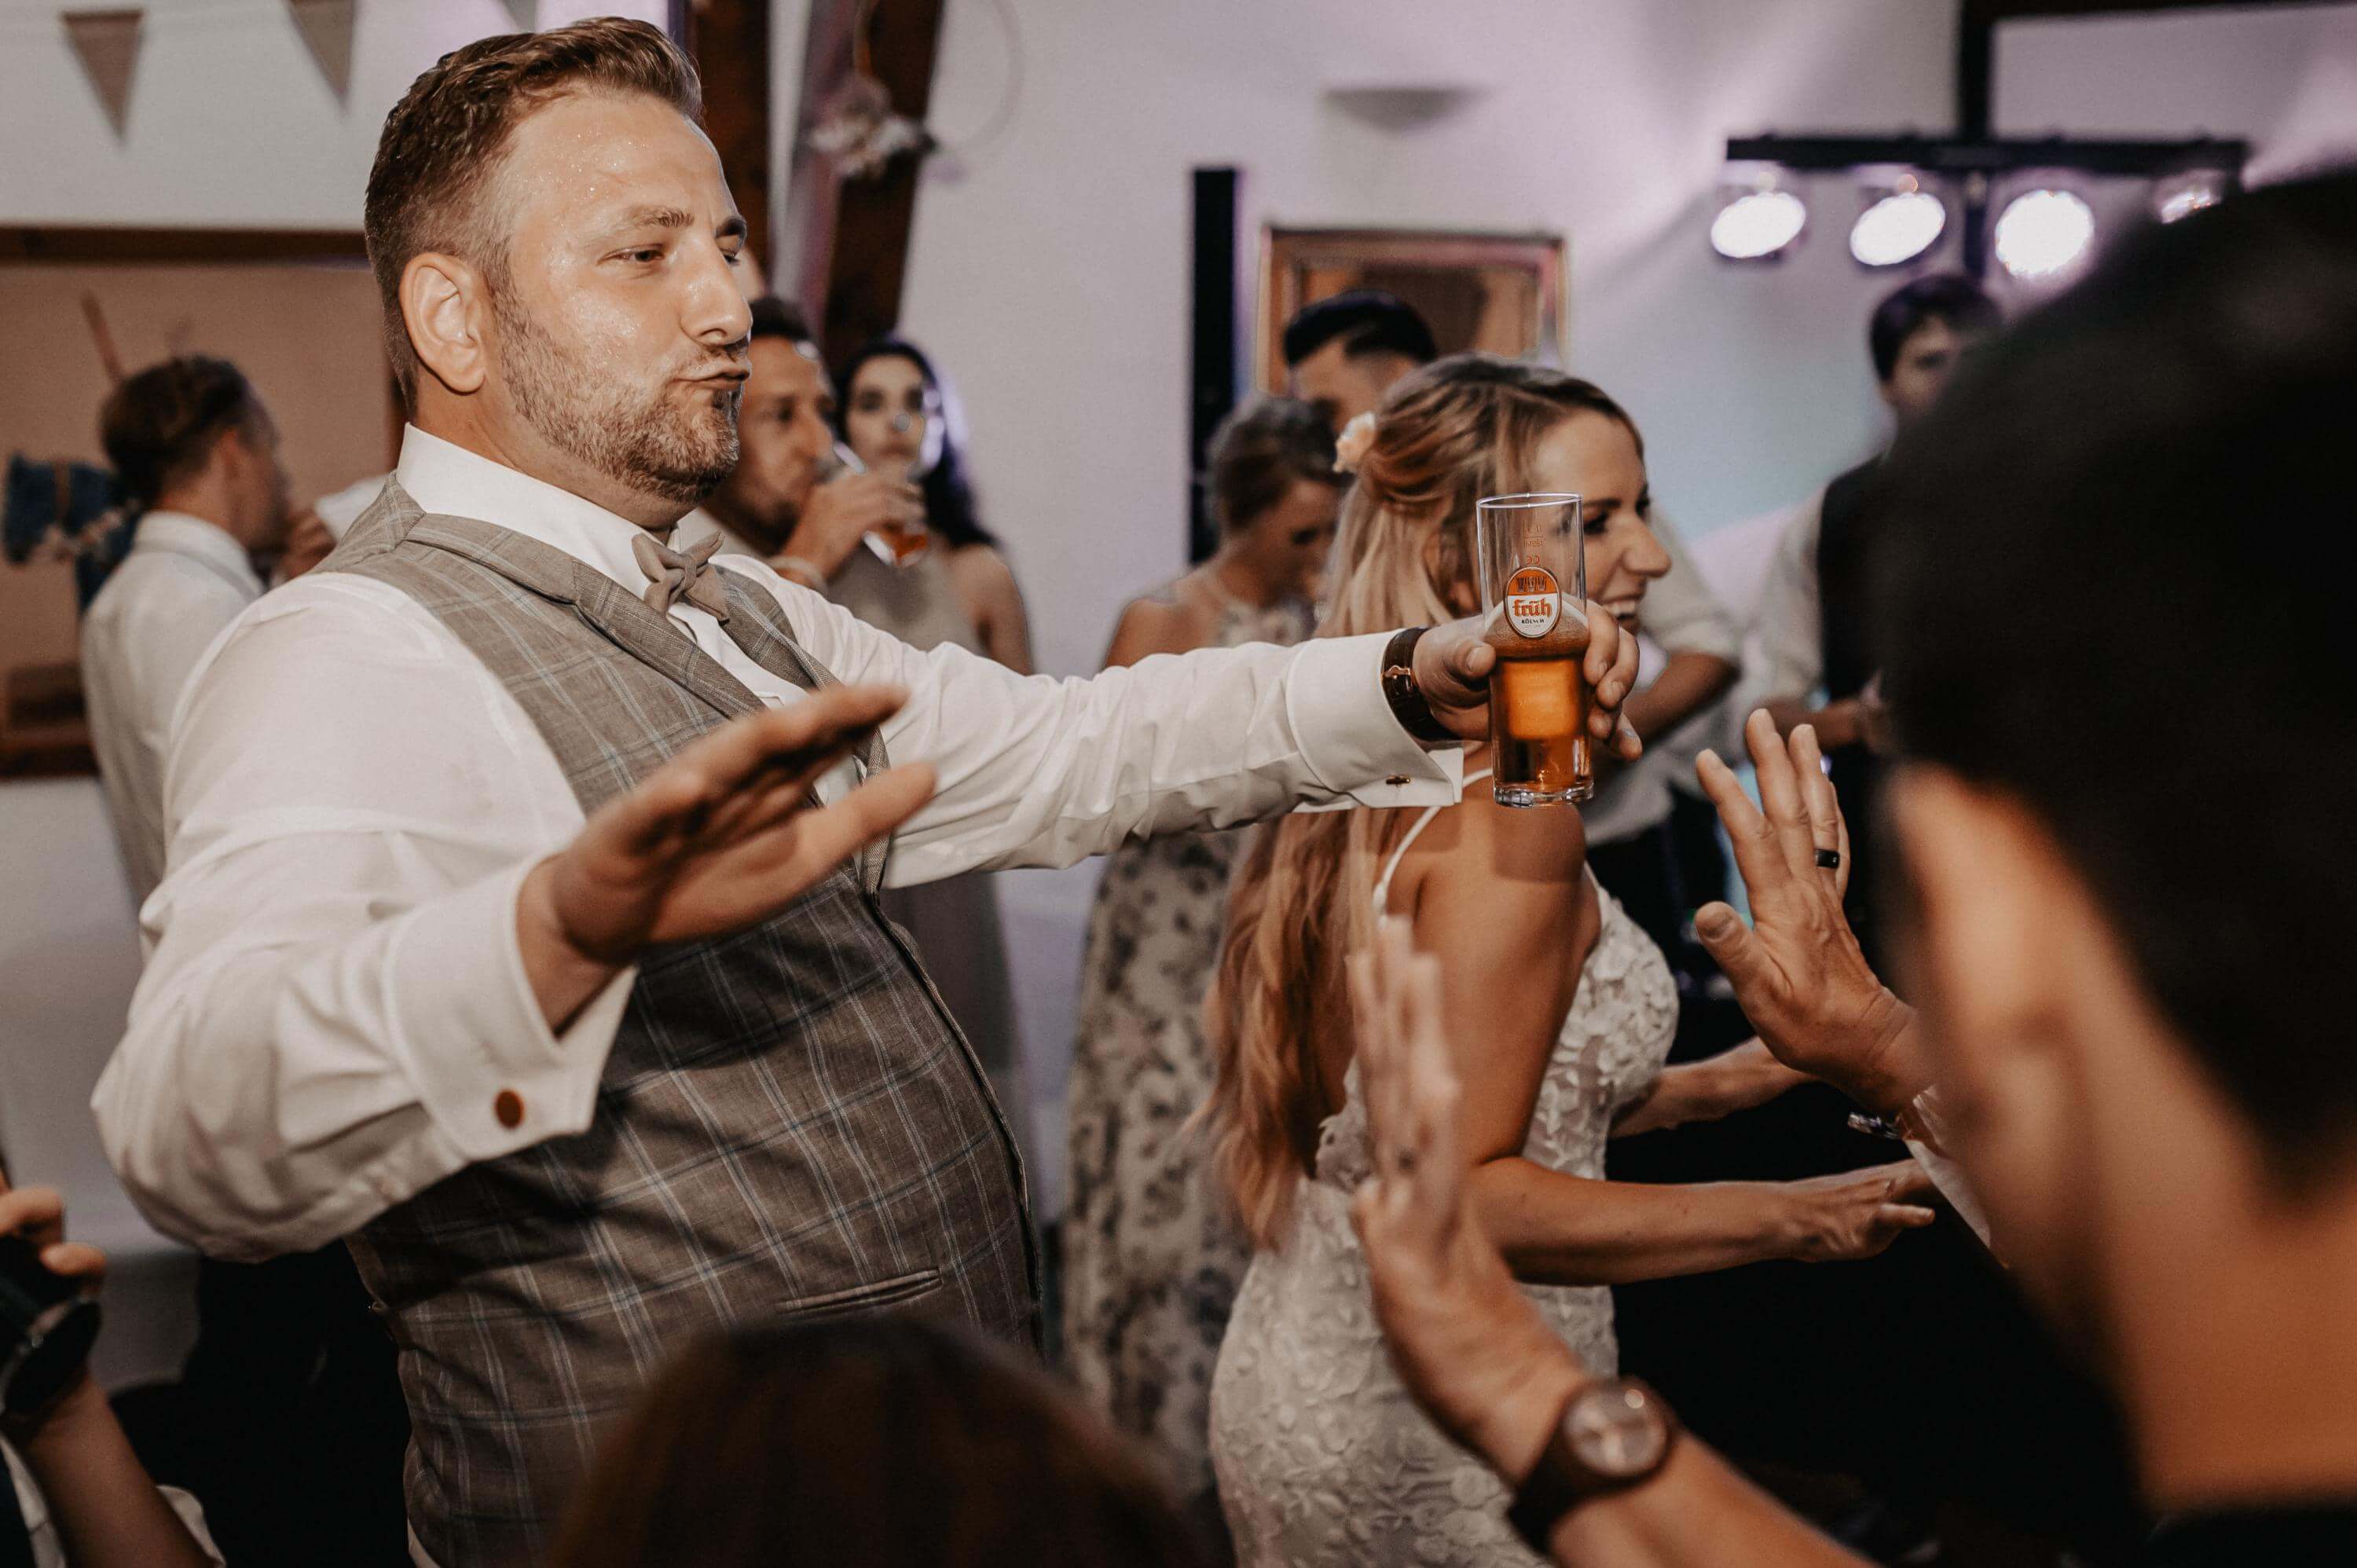 Ausgelassen mit Bierglas in der Hand tanzt der Bräutigam neben der Braut am späten Abend auf der Tanzfläche in einer Scheune zusammen mit der Hochzeitsgesellschaft.